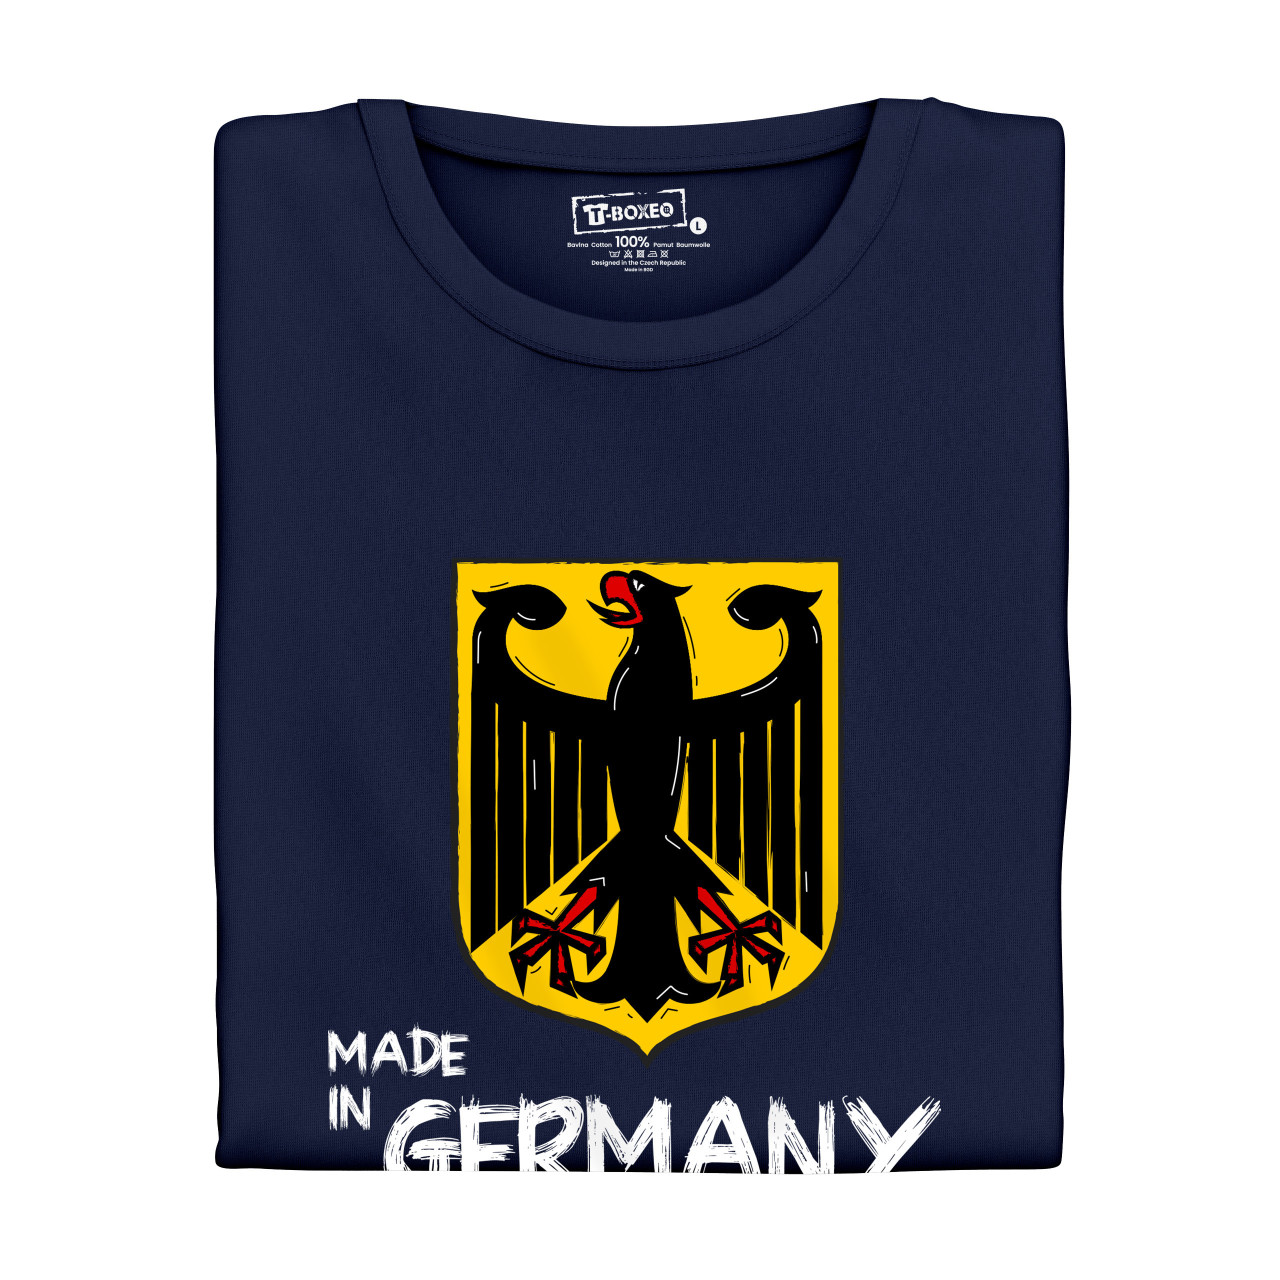 Pánské tričko s potiskem "Made in Germany" DE